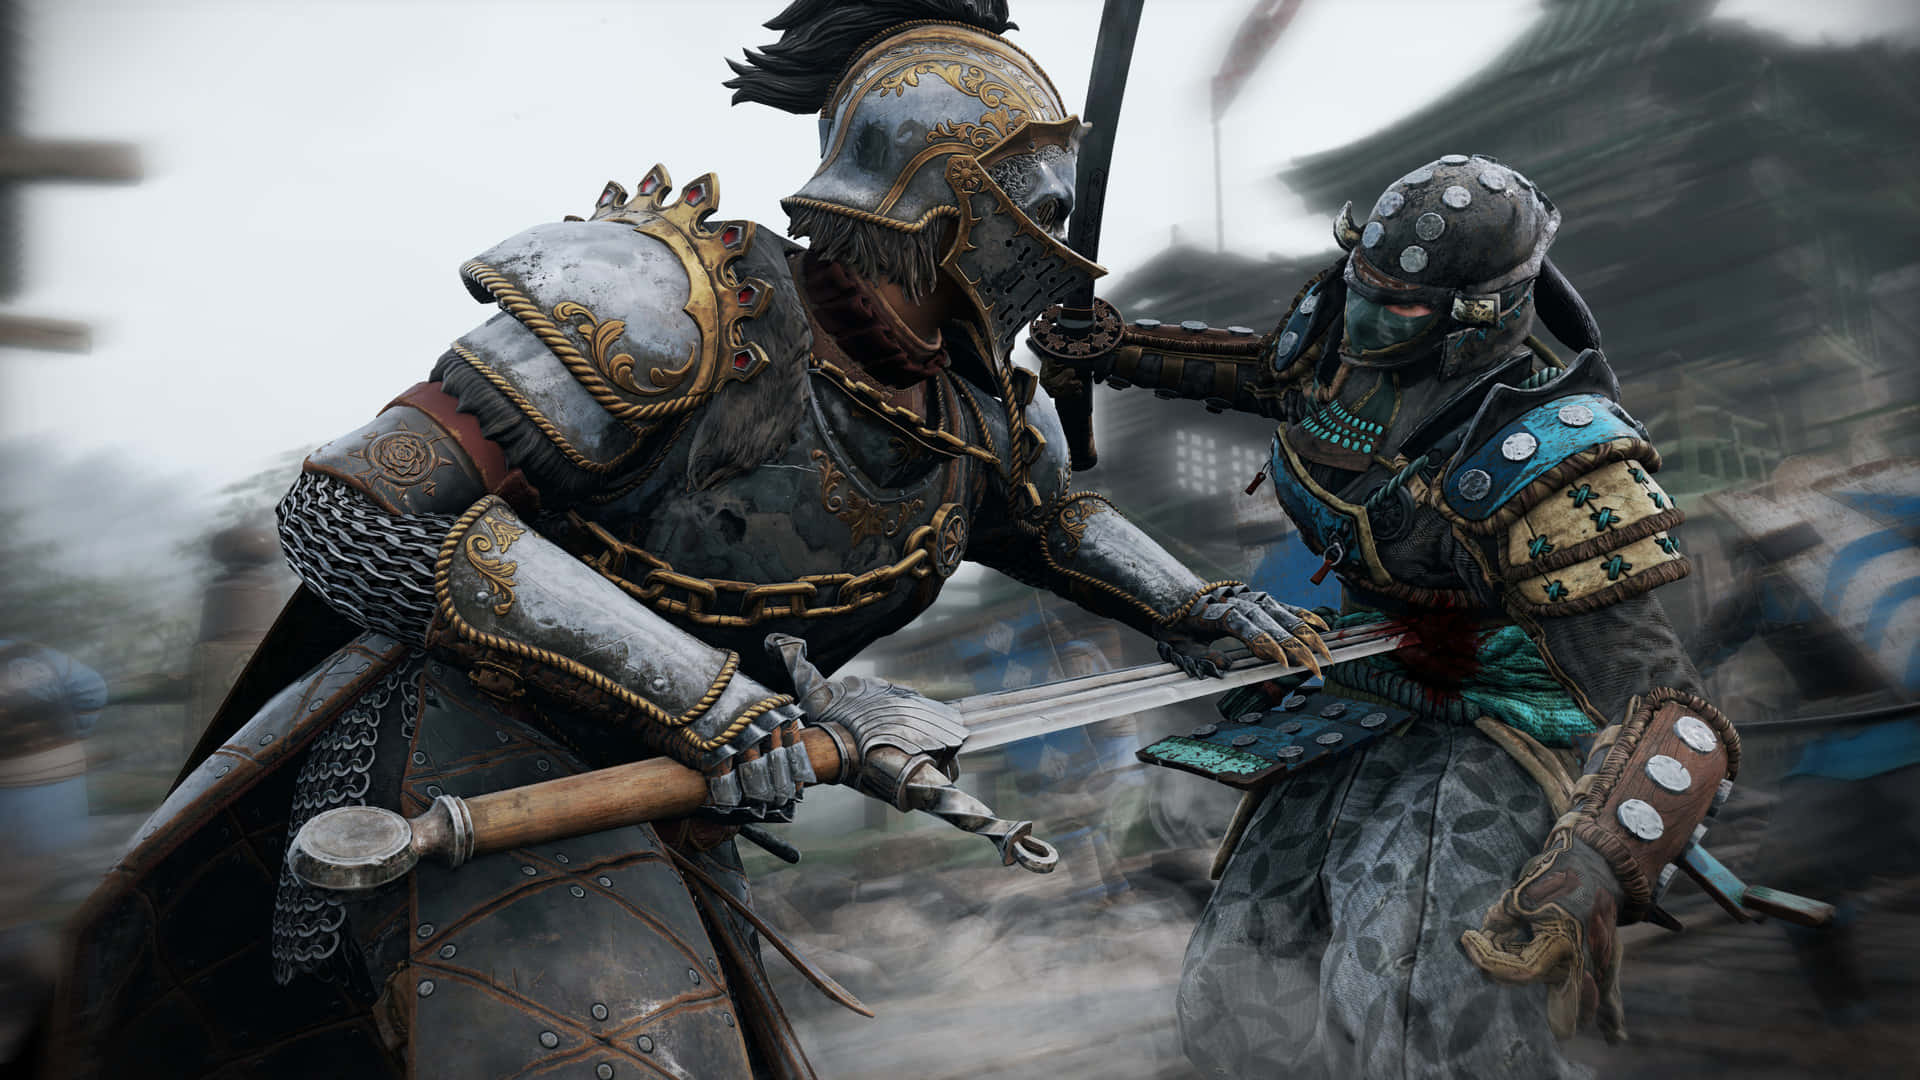 1080pbakgrundsbild För For Honor, Där En Riddare Kämpar Mot En Samuraj.